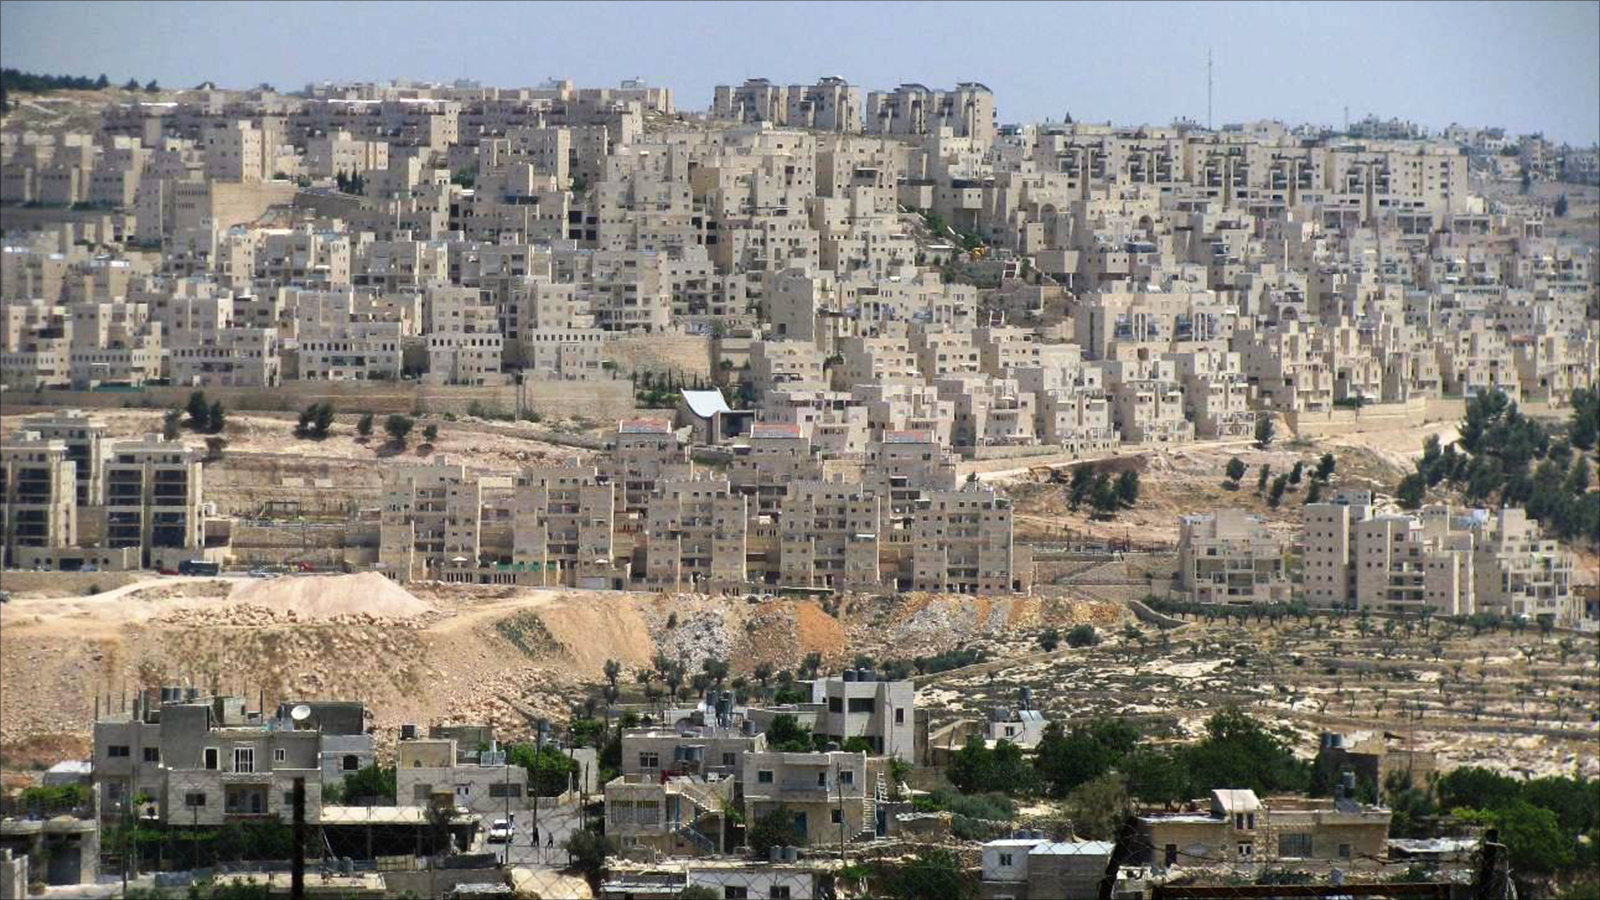 ‪الأمم المتحدة أصدرت قرارا يطالب إسرائيل بوقف الاستيطان‬ (الجزيرة)